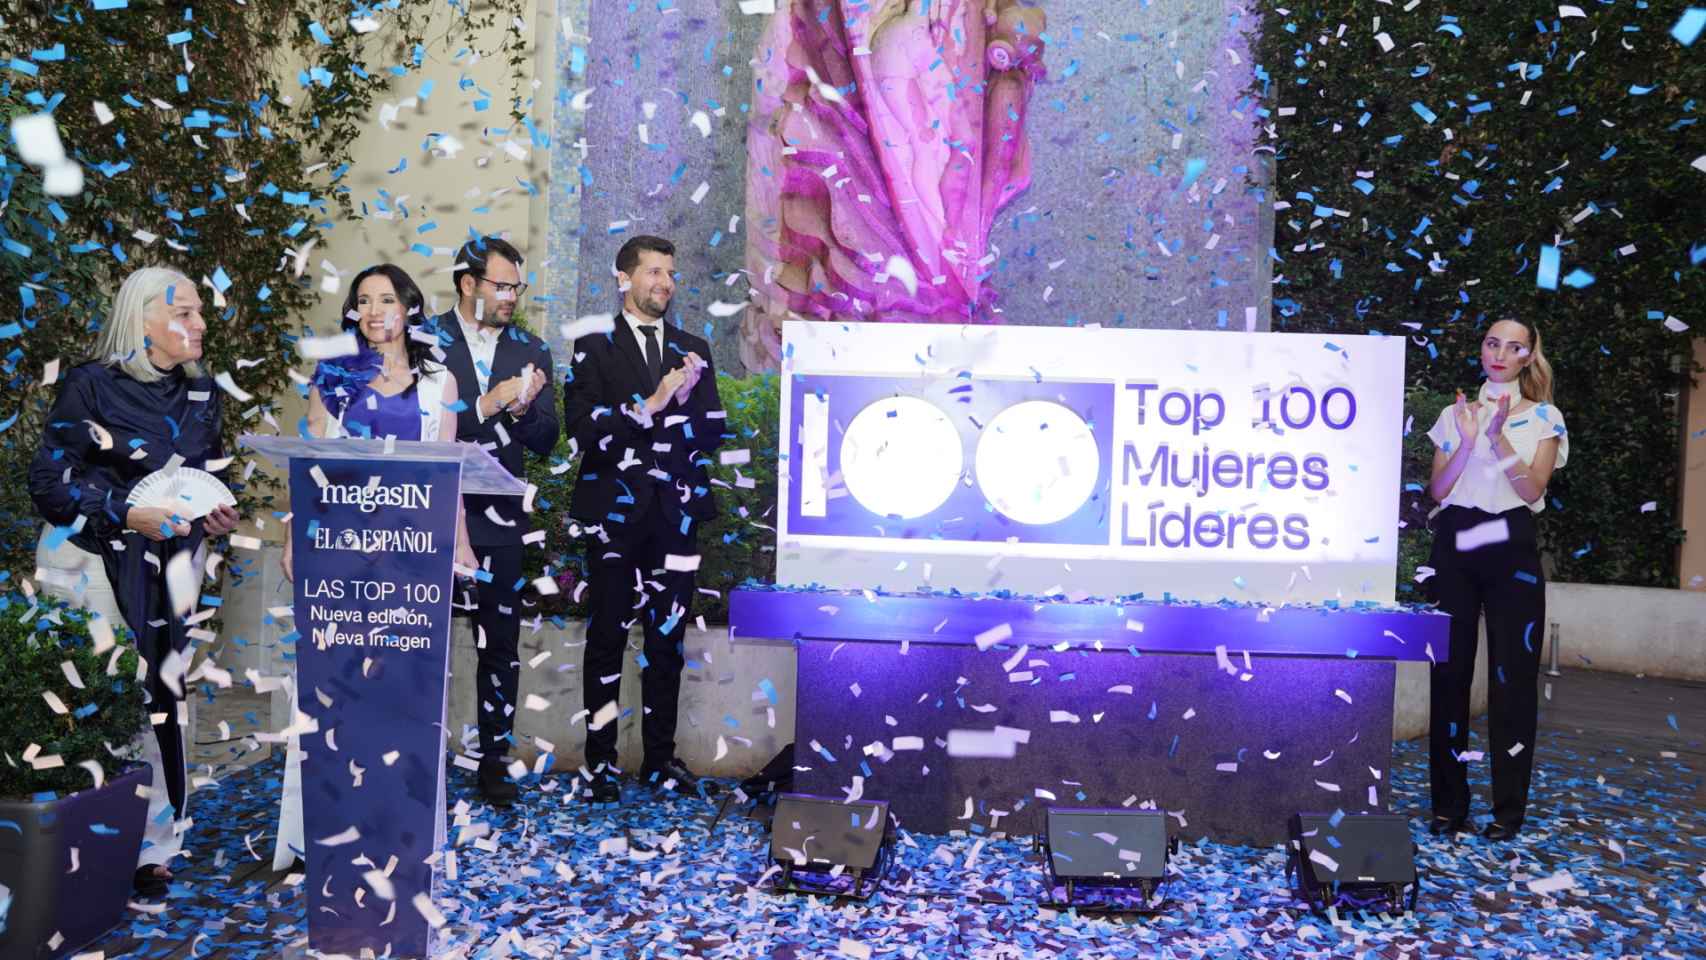 Se descubre el nuevo logo de 'Las Top 100' diseñado por Morillas.